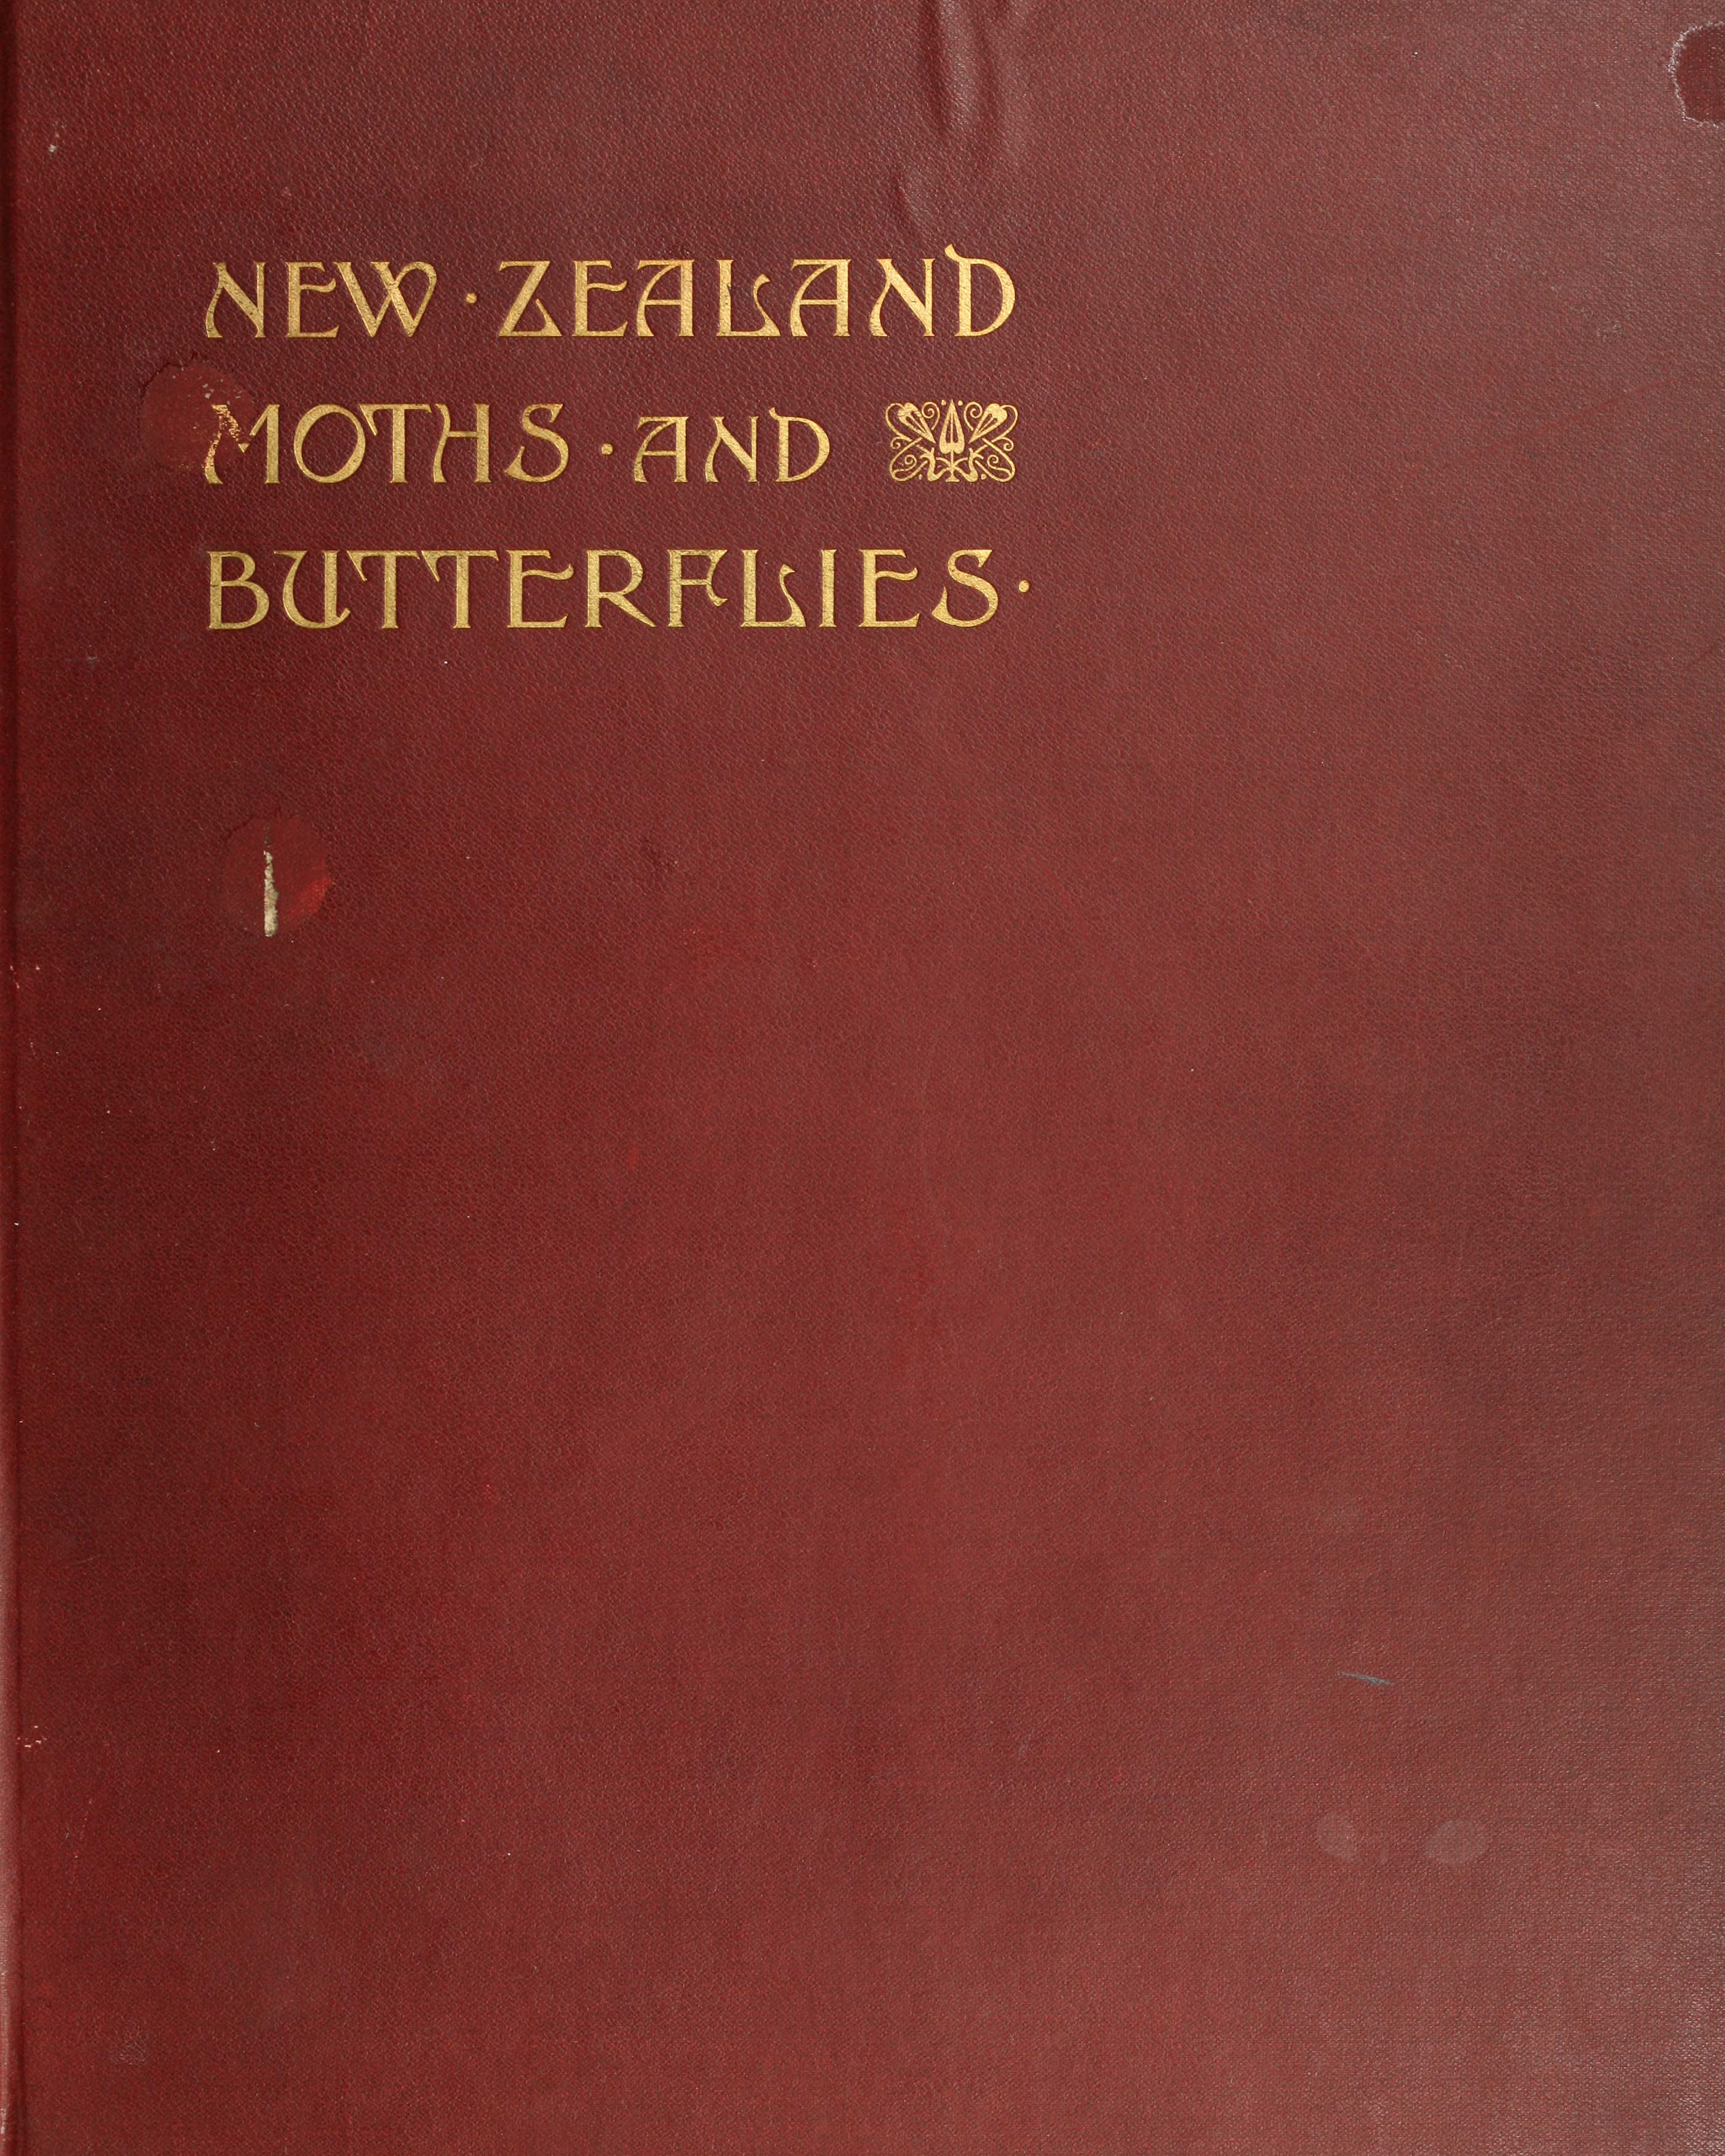 New Zealand Moths and Butterflies (Macro-Lepidoptera)